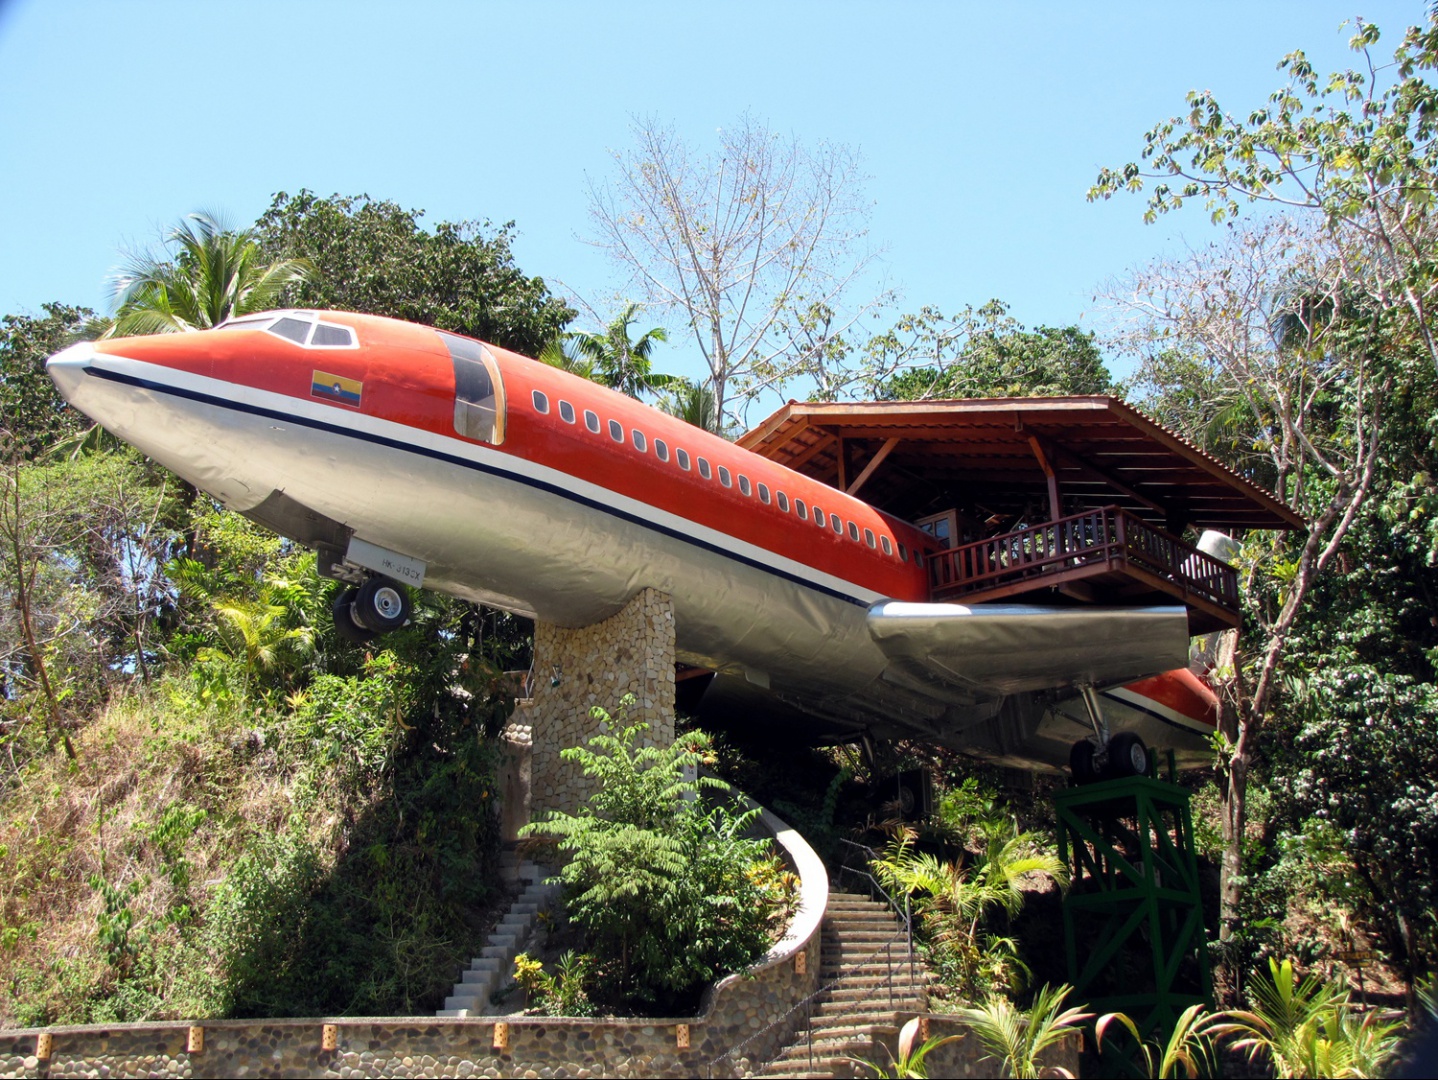 Dom, który powstał z boeinga 727 z 1965 roku. Fot. Hotel Costa Verde, Costaverde.com